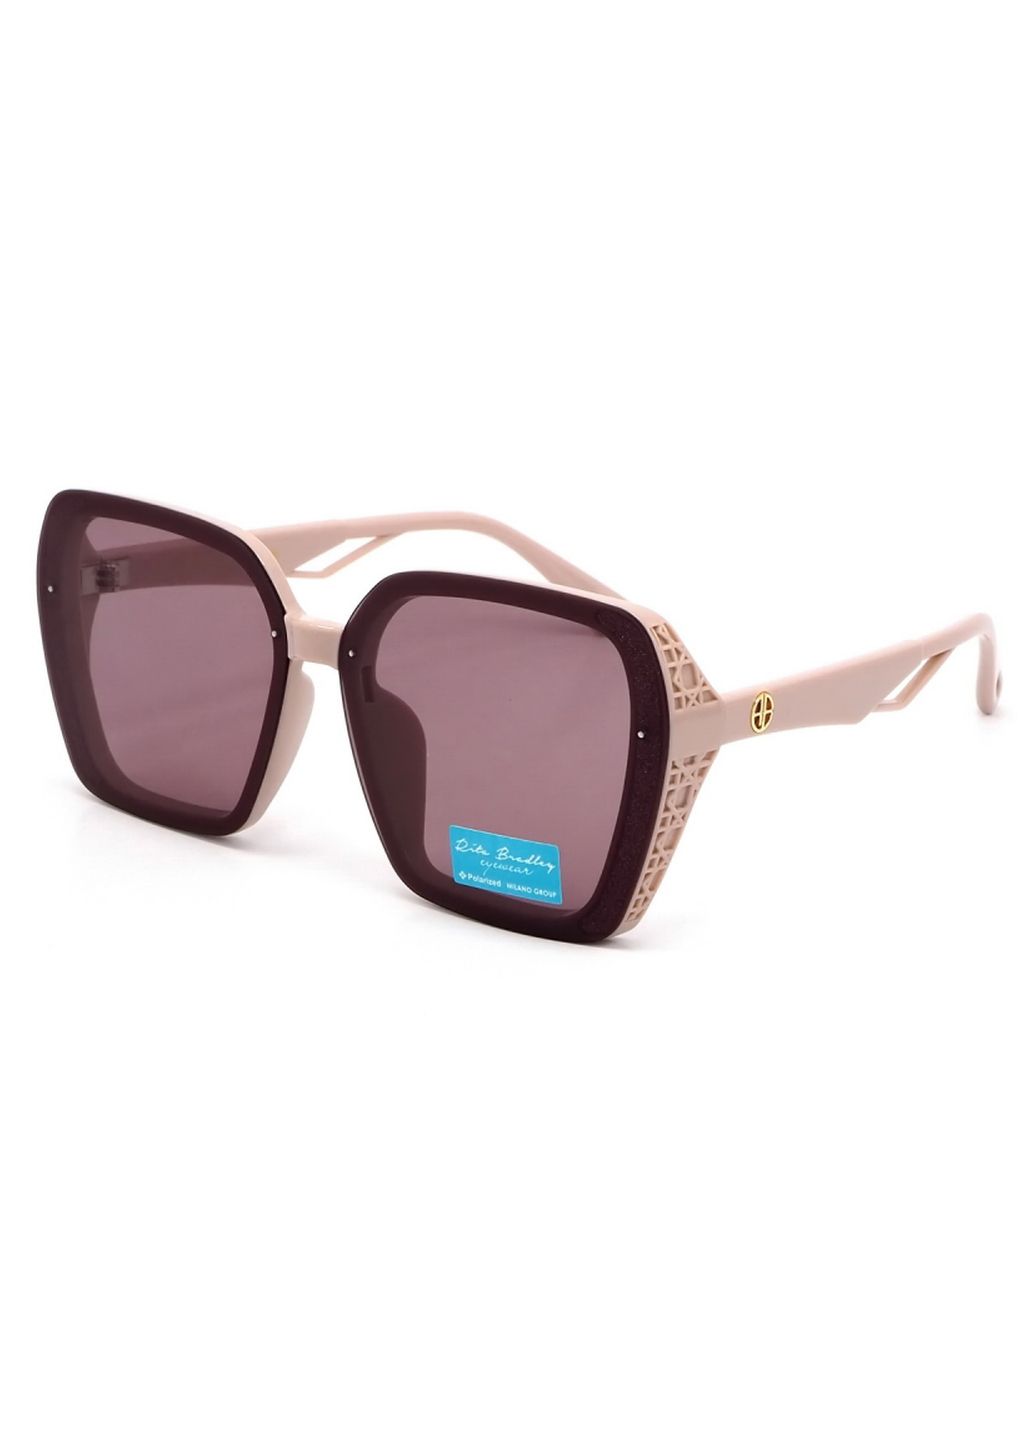 Купить Женские солнцезащитные очки Rita Bradley с поляризацией RB730 112076 в интернет-магазине